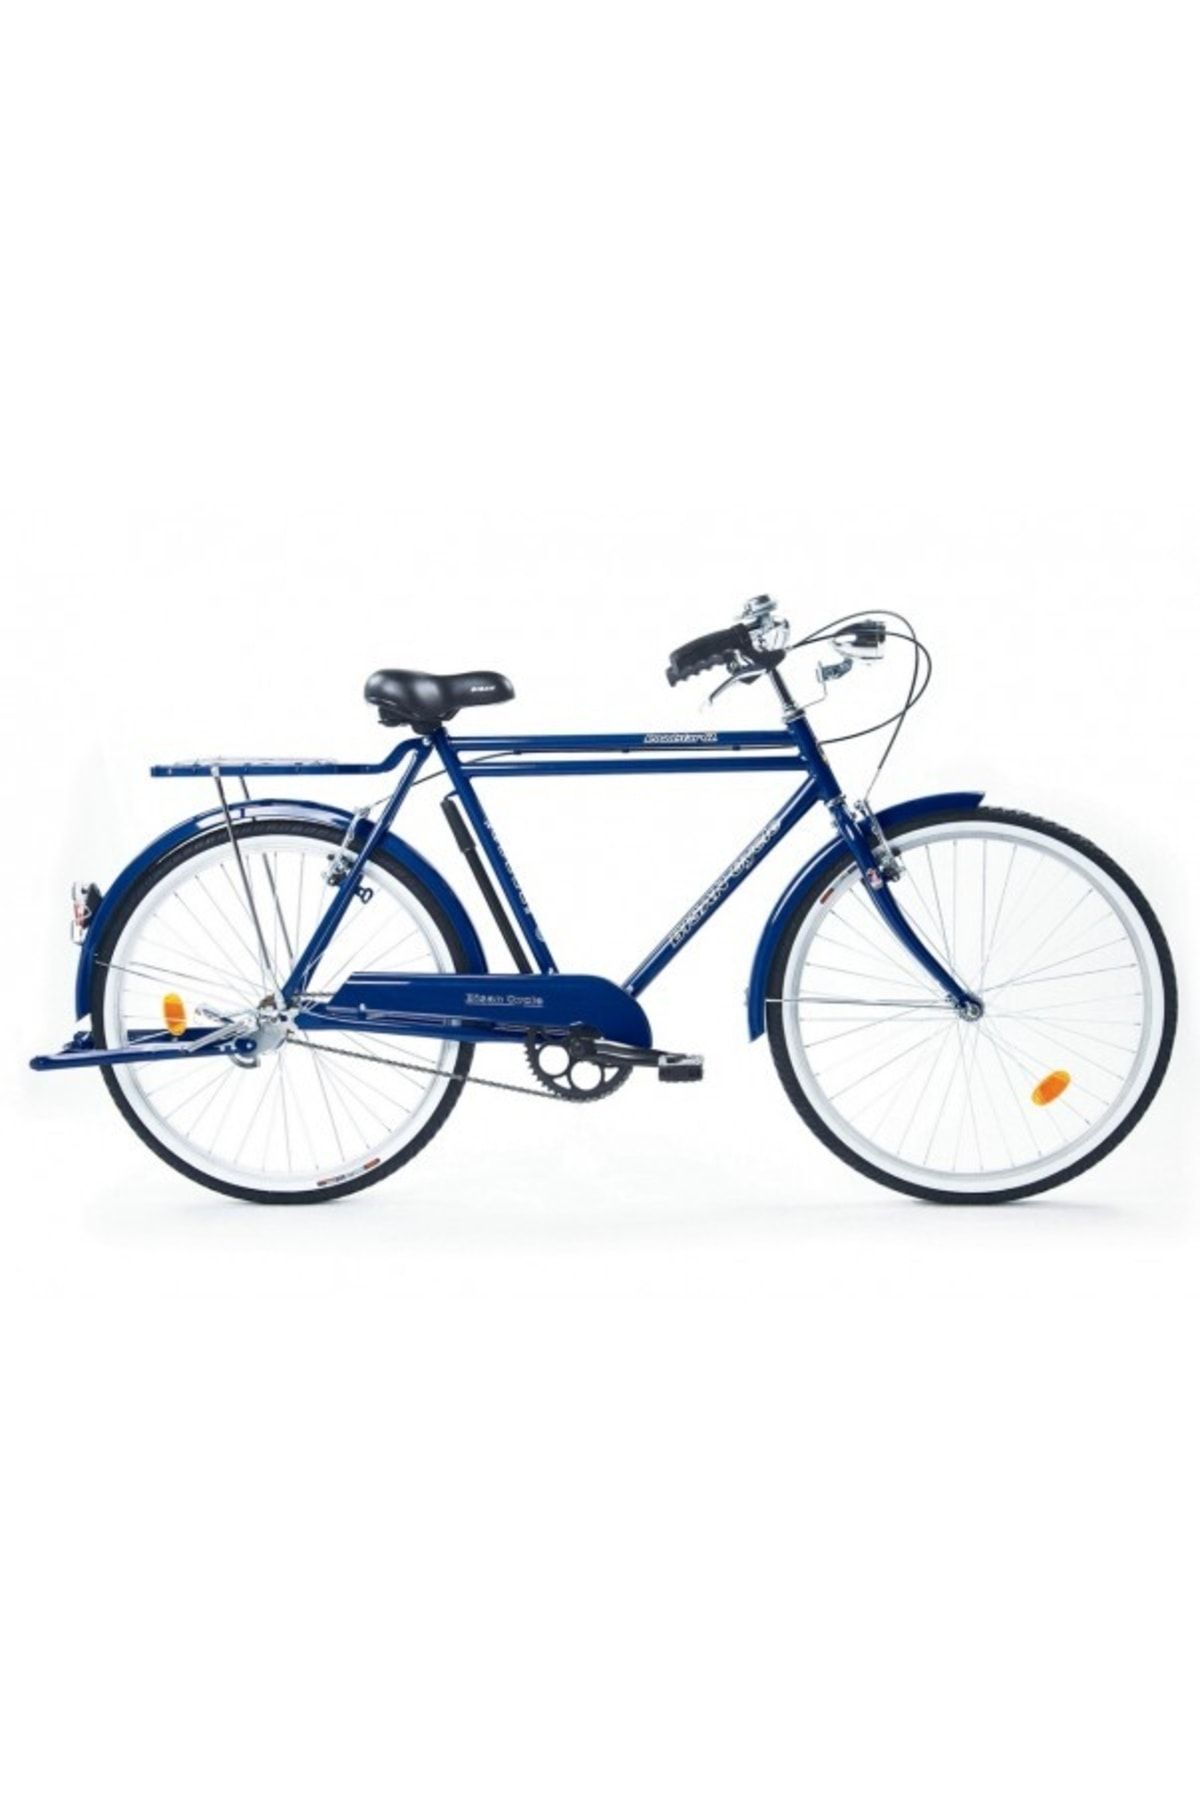 Bisan Roadstar Gl 26/200 Bisiklet Mavi